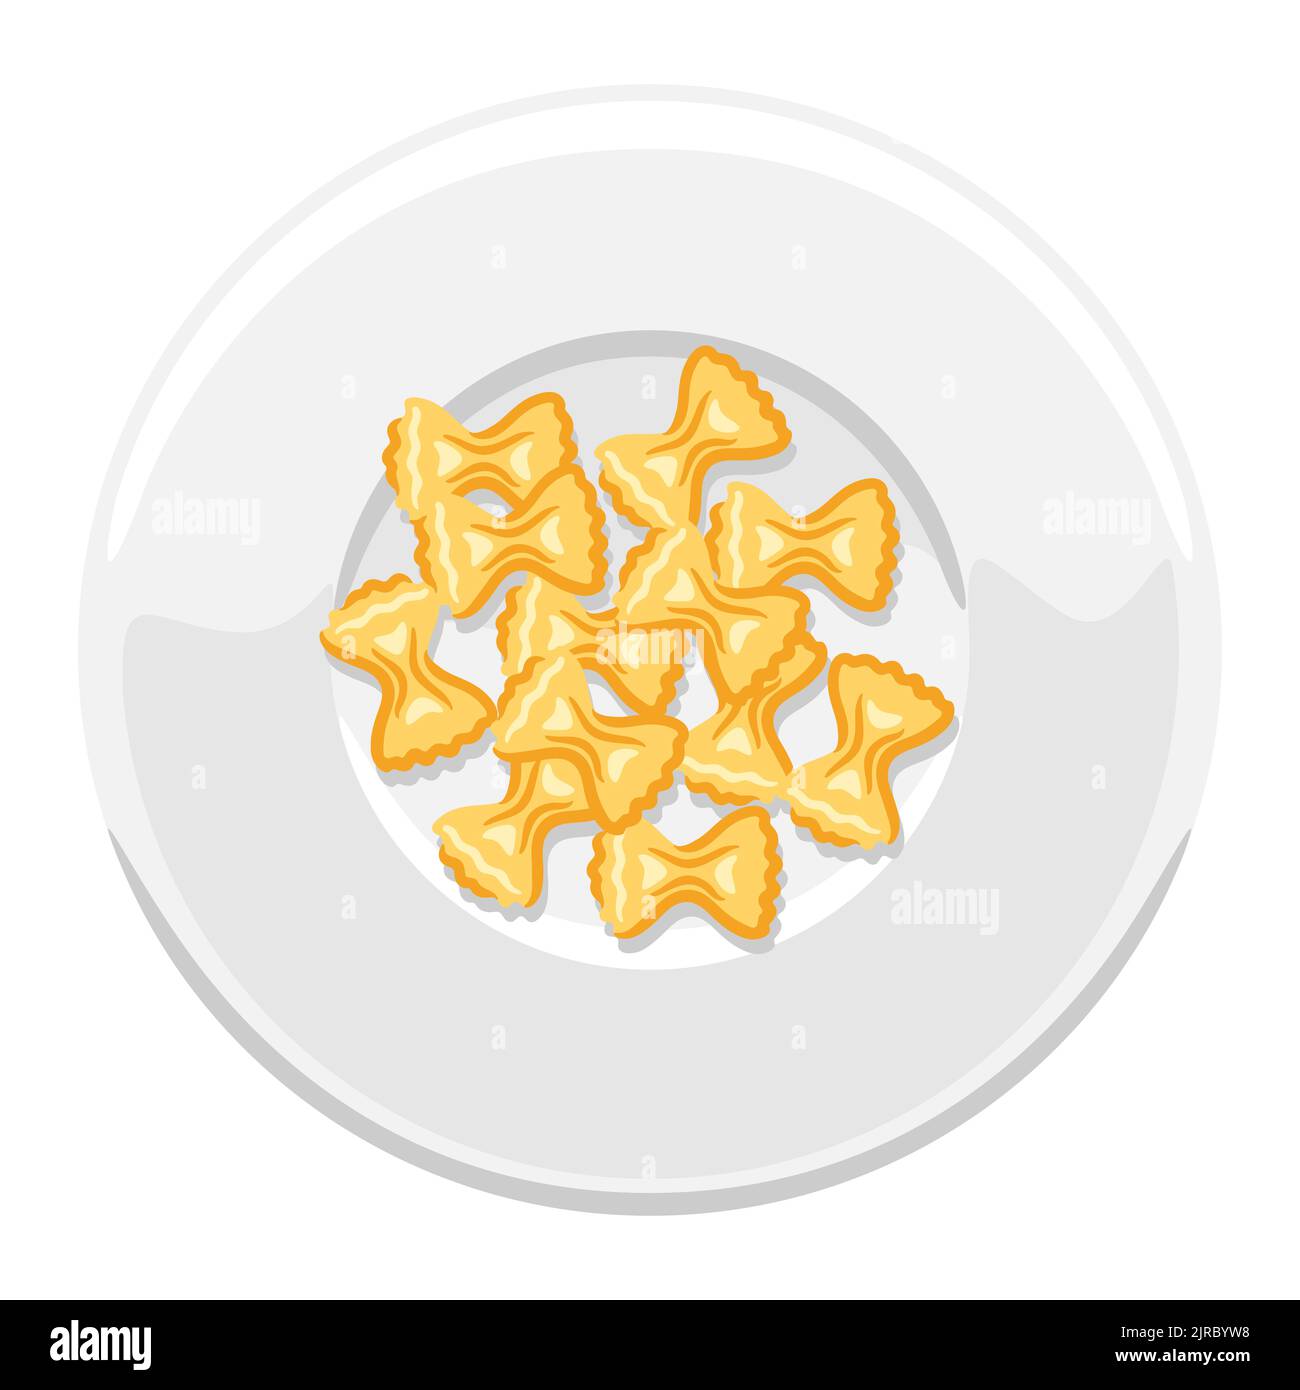 Illustrazione della farfalle di pasta italiana sul piatto. Immagine culinaria per menu e ristoranti. Illustrazione Vettoriale